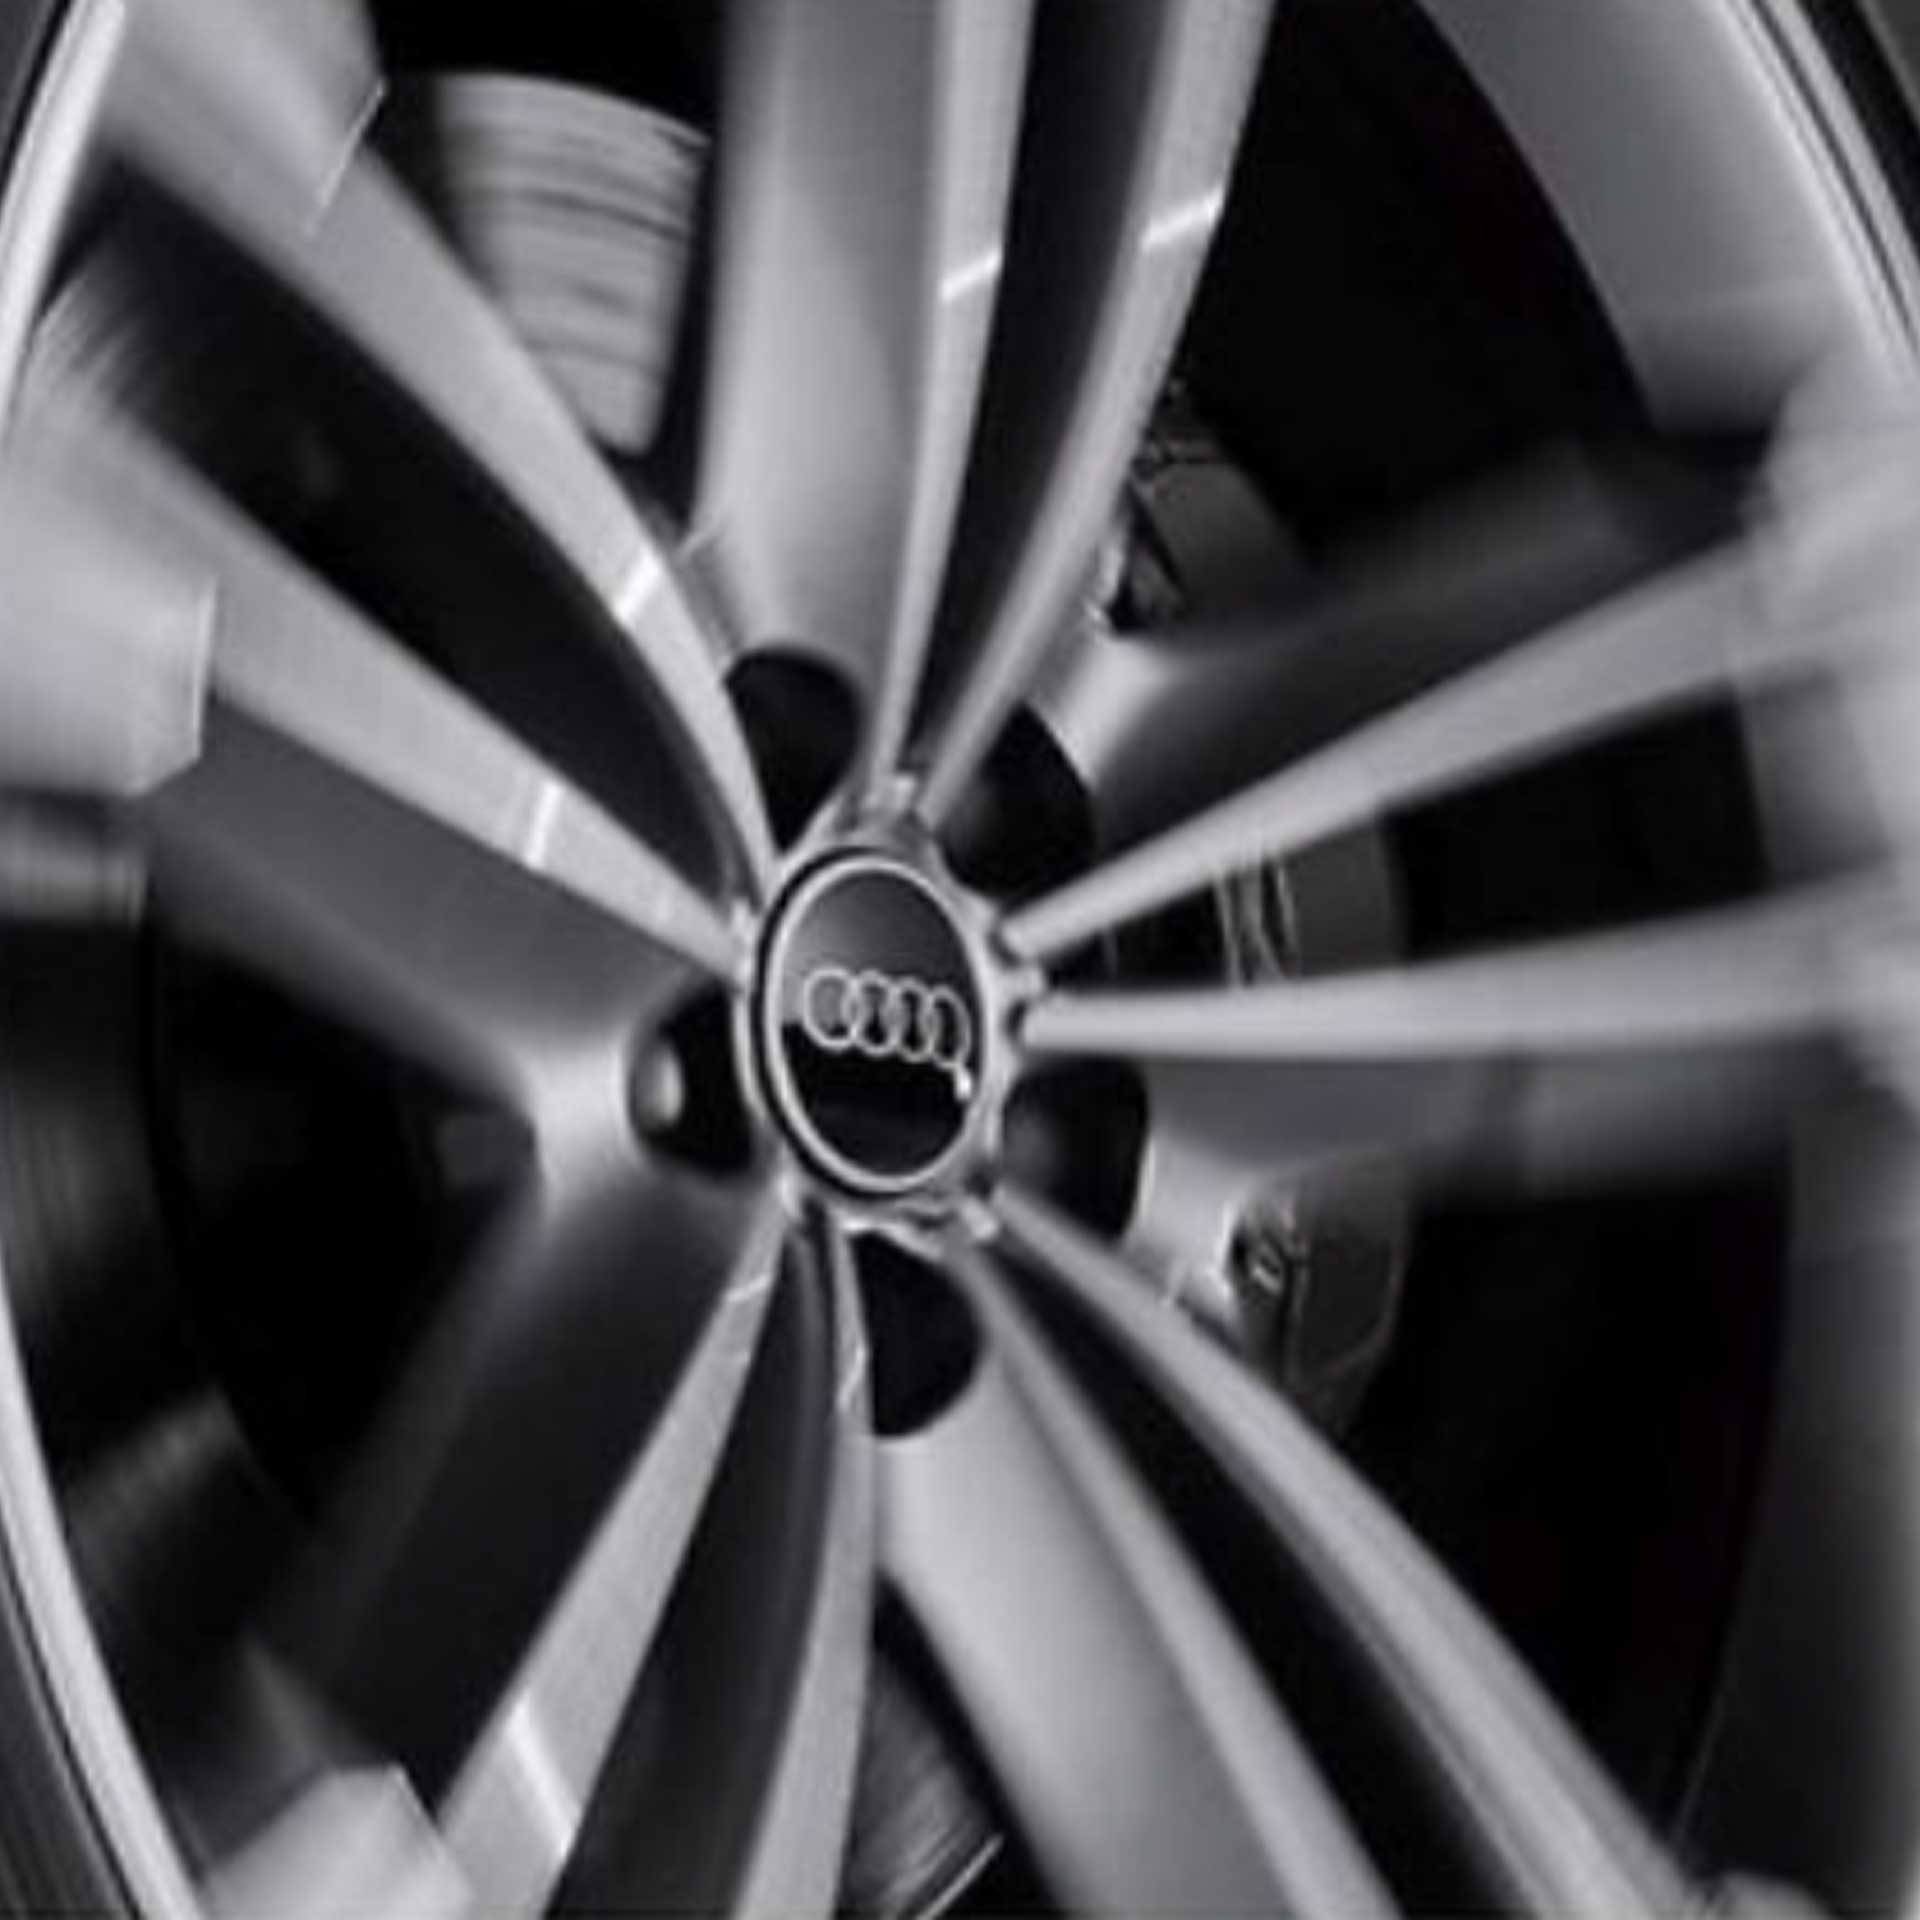 NEU Original Audi Reifentaschen geeignet bis 18" Zoll 4-teilig SET Reifen Räder 